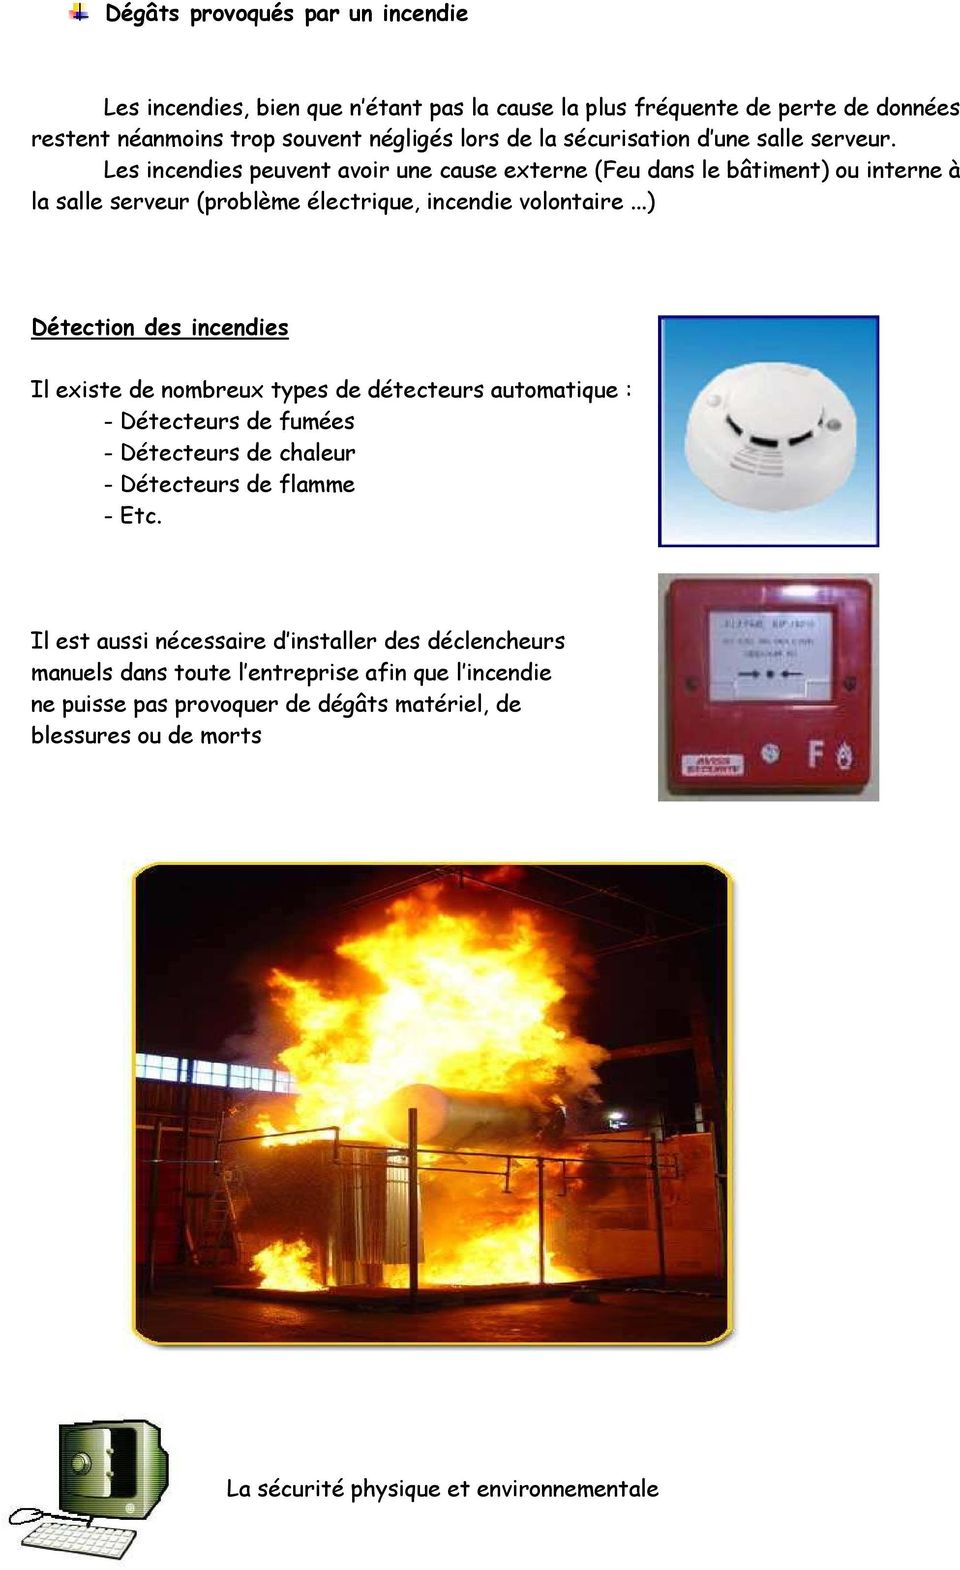 Les incendies peuvent avoir une cause externe (Feu dans le bâtiment) ou interne à la salle serveur (problème électrique, incendie volontaire.